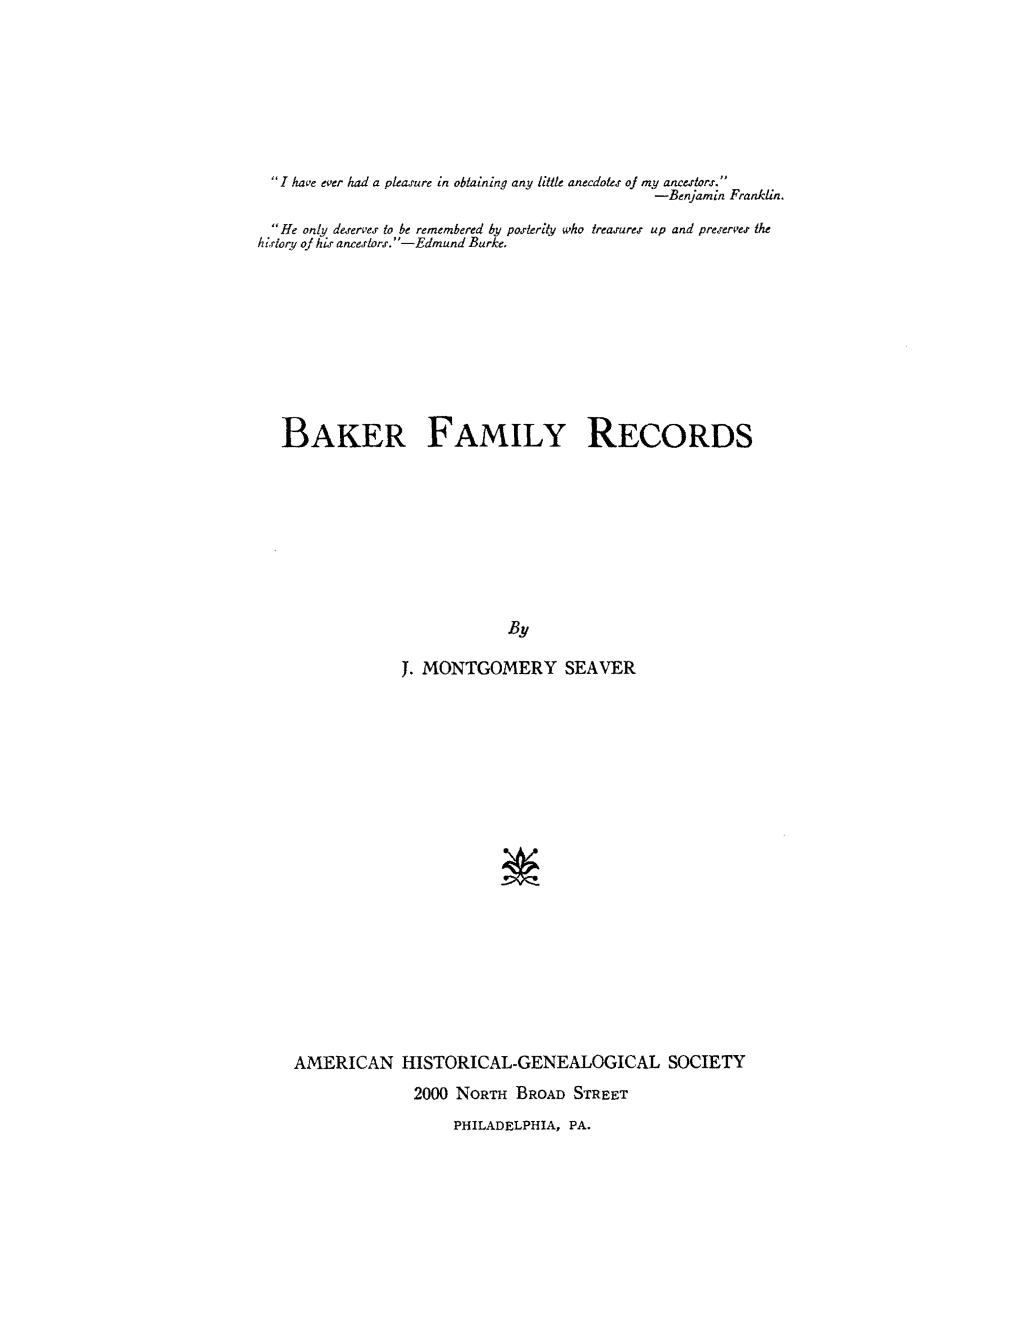 Baker Family Records